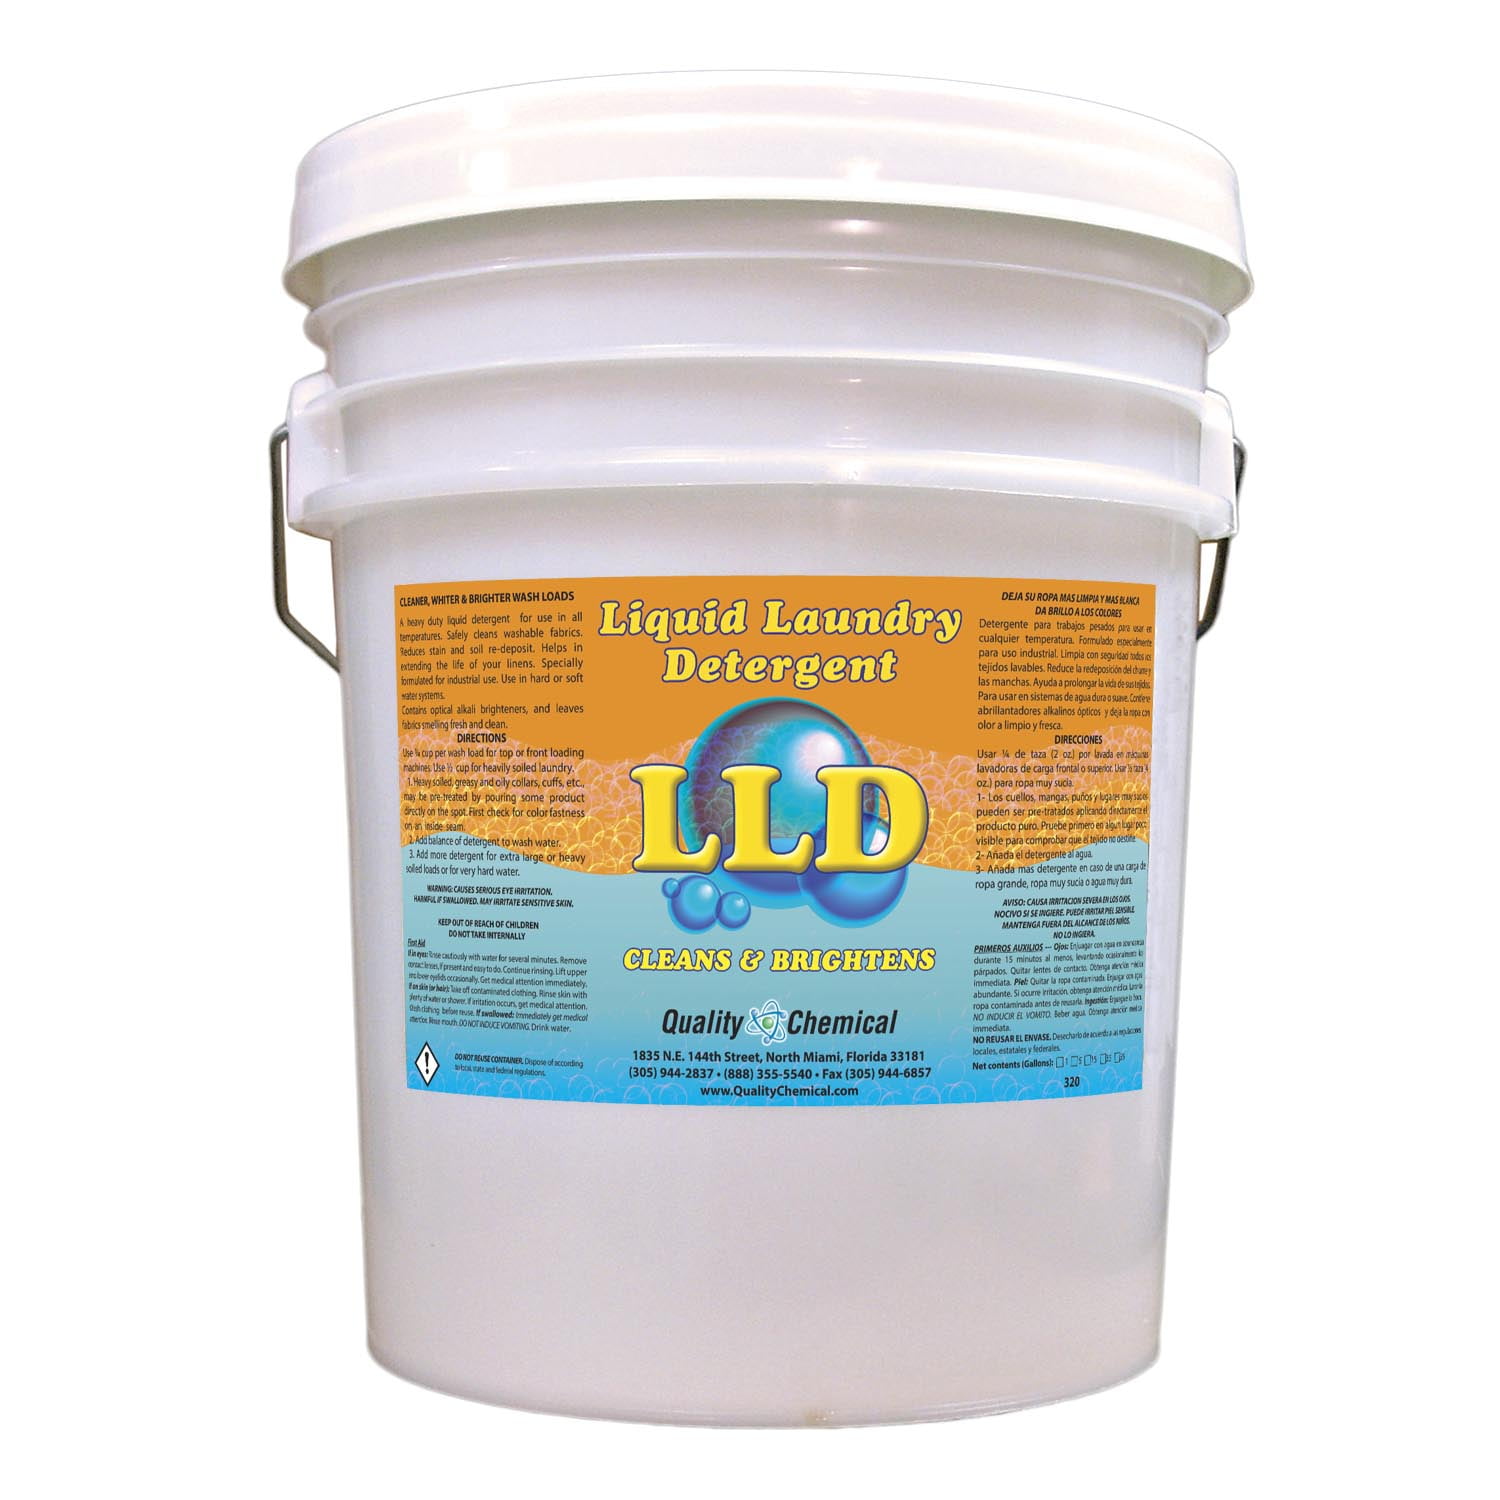 Liquid Laundry Detergent - 5 gallon pail - Walmart.com - Walmart.com